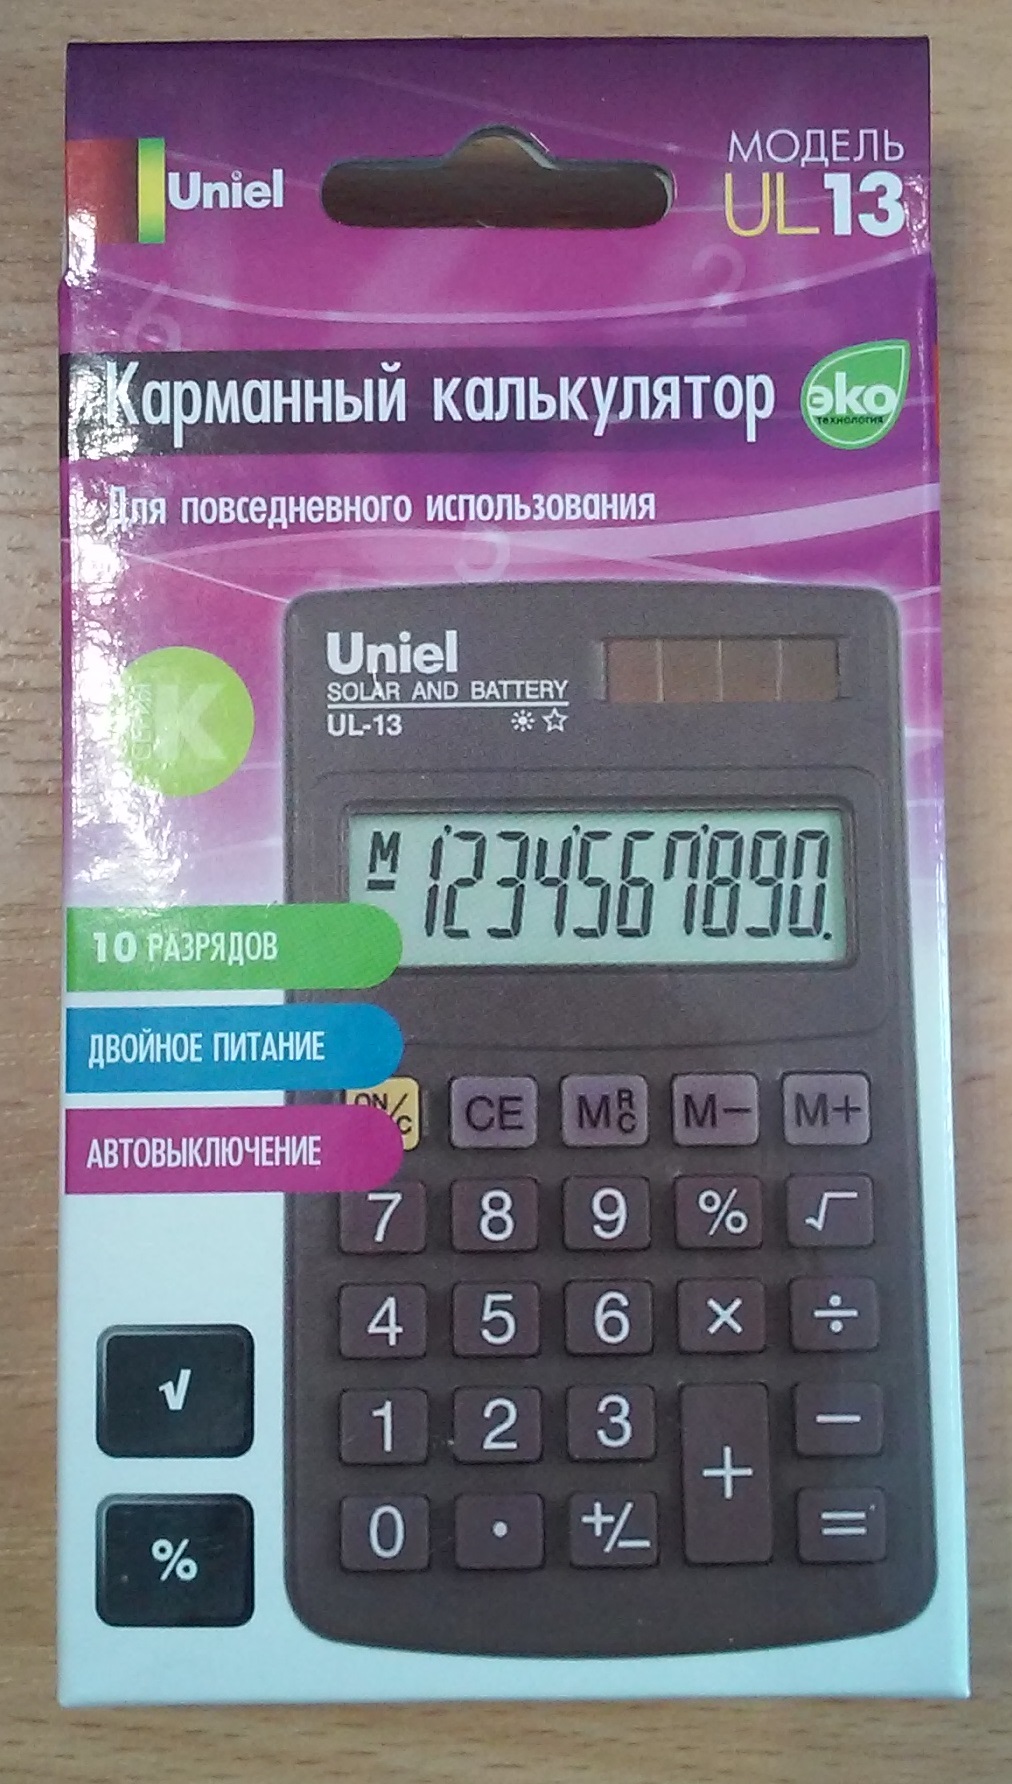 Карманный калькулятор UL-13 для повседневного использования